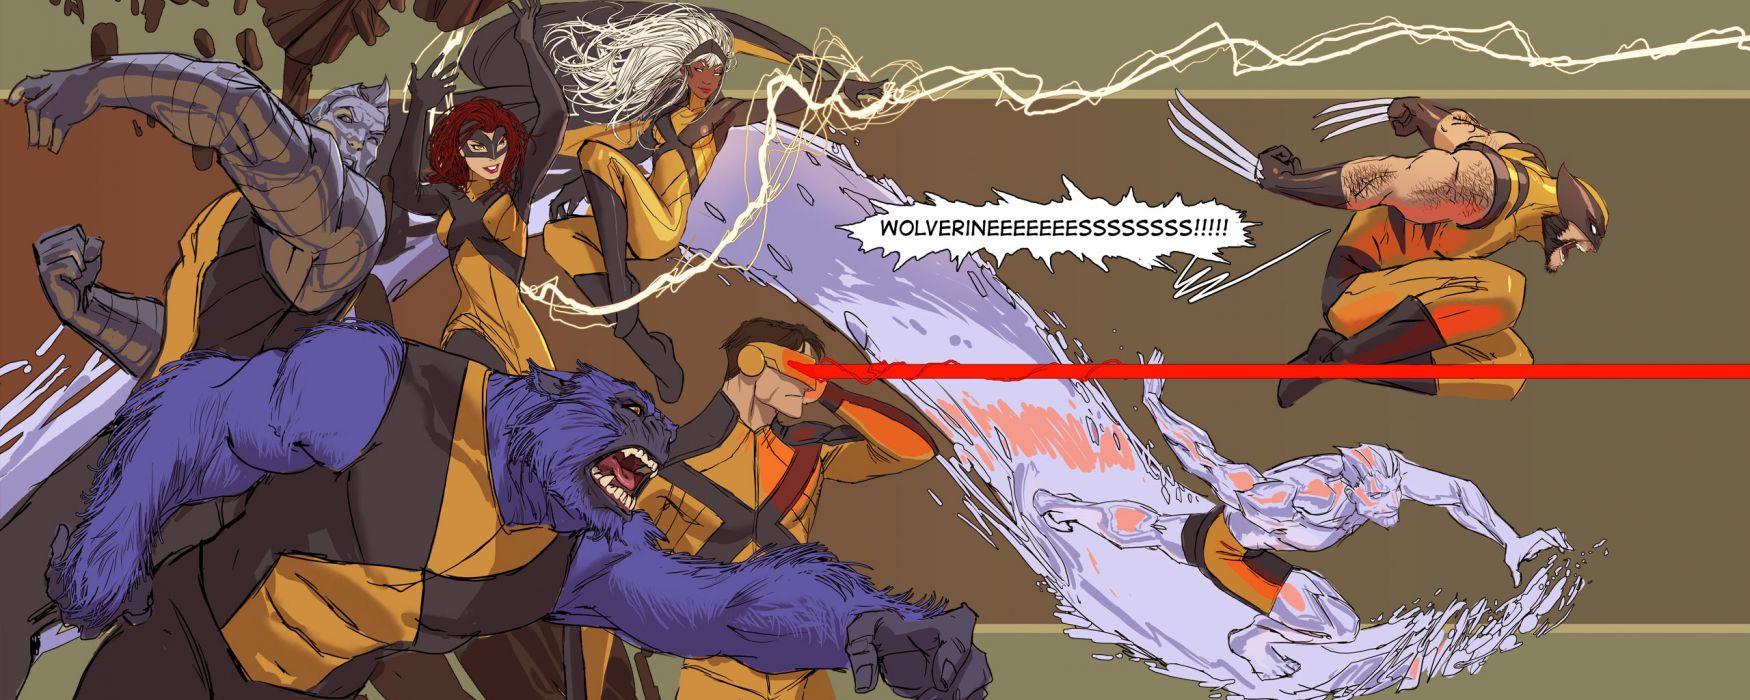 X Men Marvel Wolverine Beast Cyclops Storm Wallpaperx1024